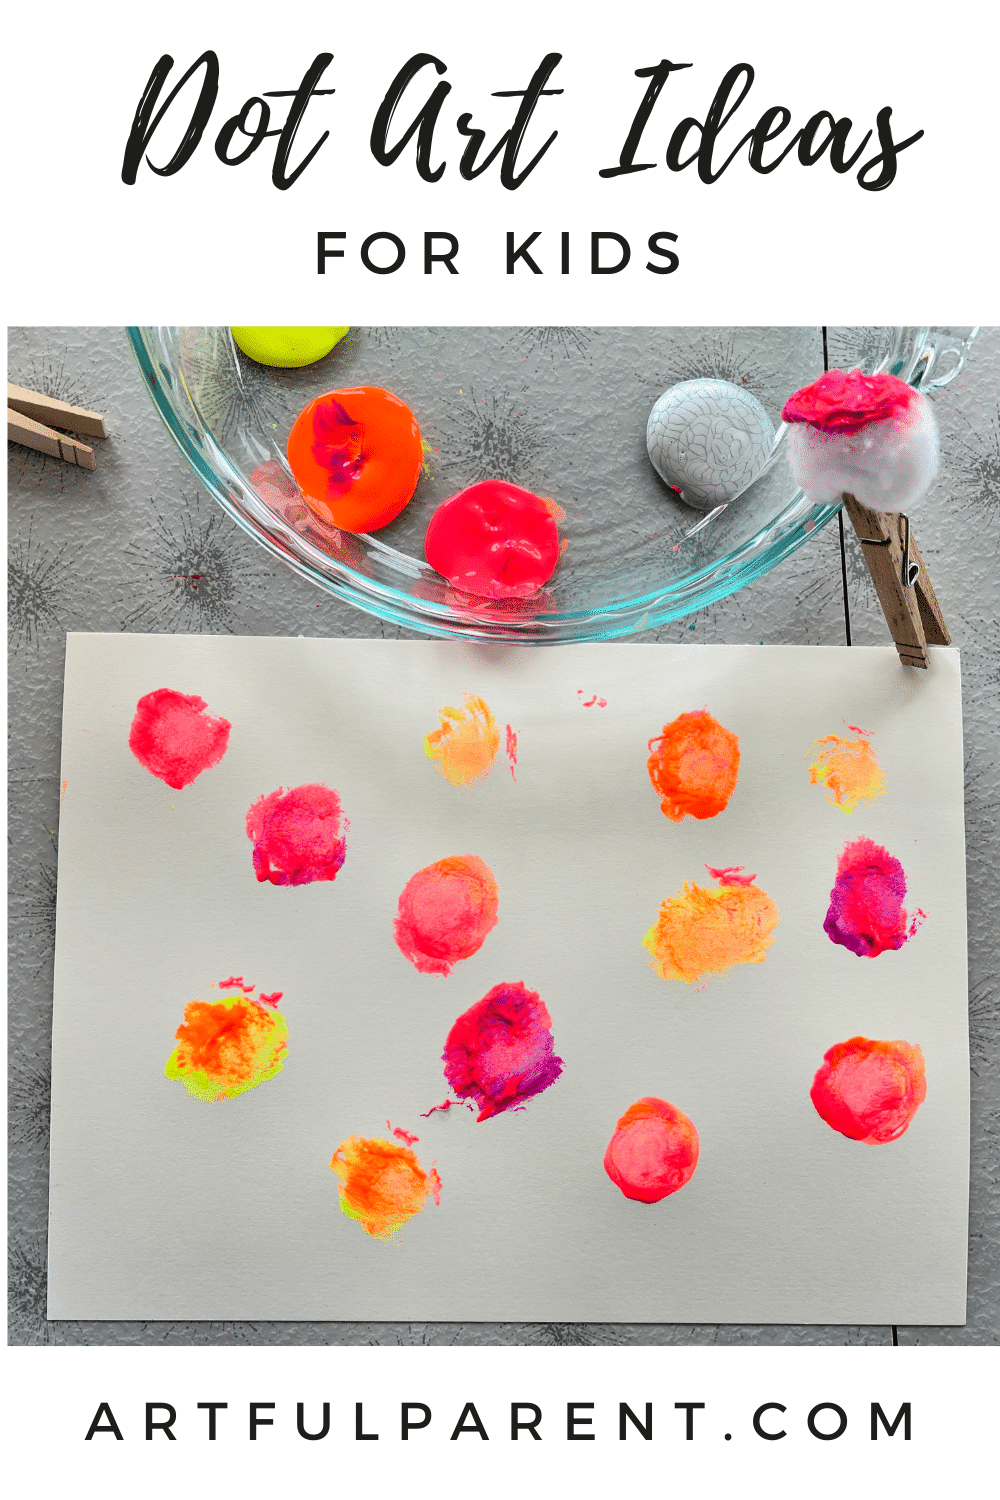 14 Fun Dot Art Ideas for Kids